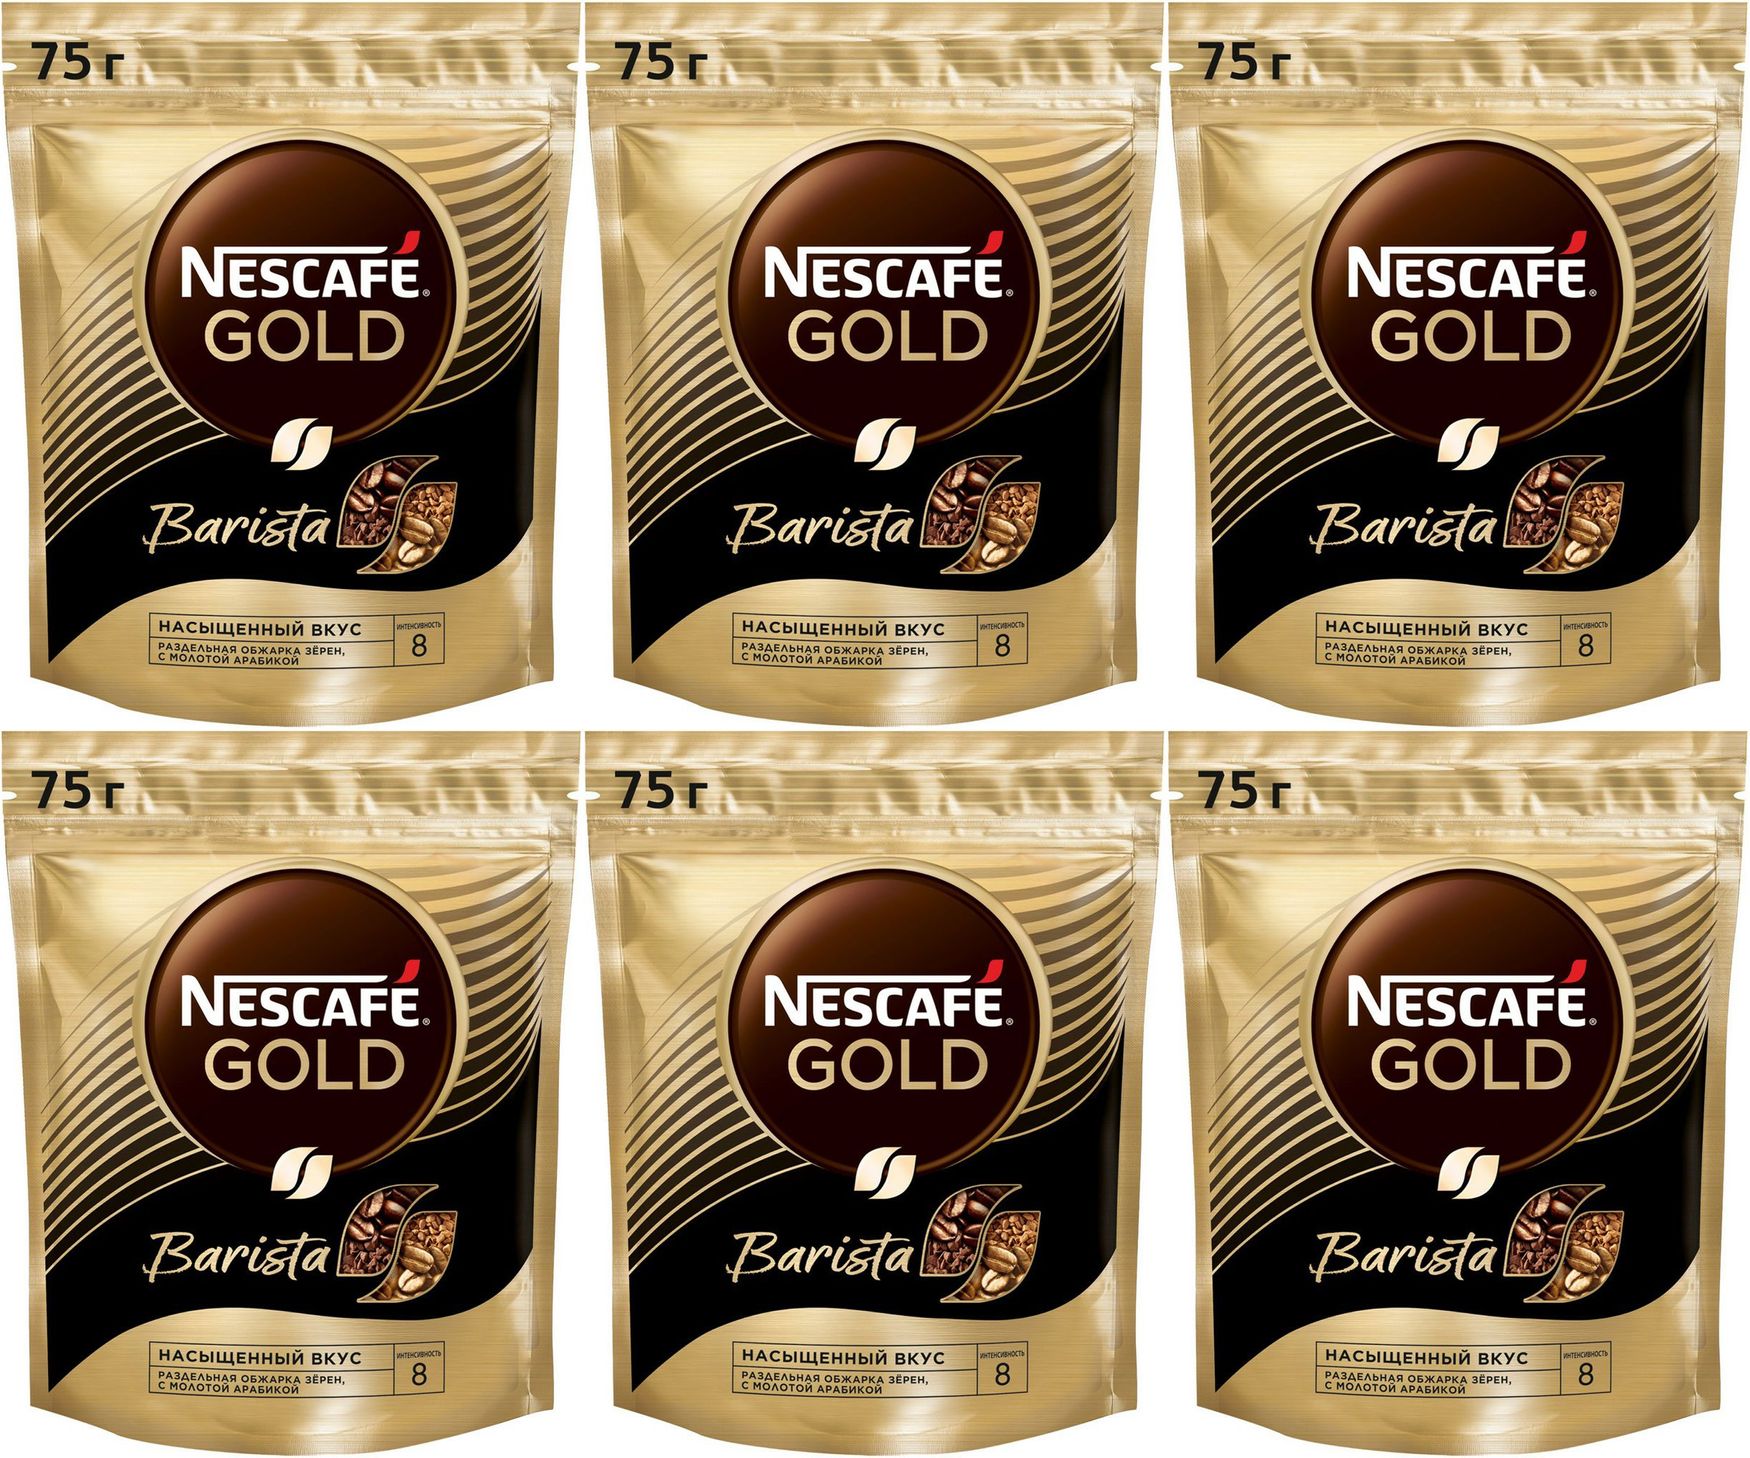 Кофе бариста растворимый. Кофе Nescafe Gold растворимый, 75г. Кофе Нескафе Голд 75гр бариста/стайл пакет. Нескафе Голд растворимый в пакетиках. Кофе Nescafe Gold Barista с кружкой.